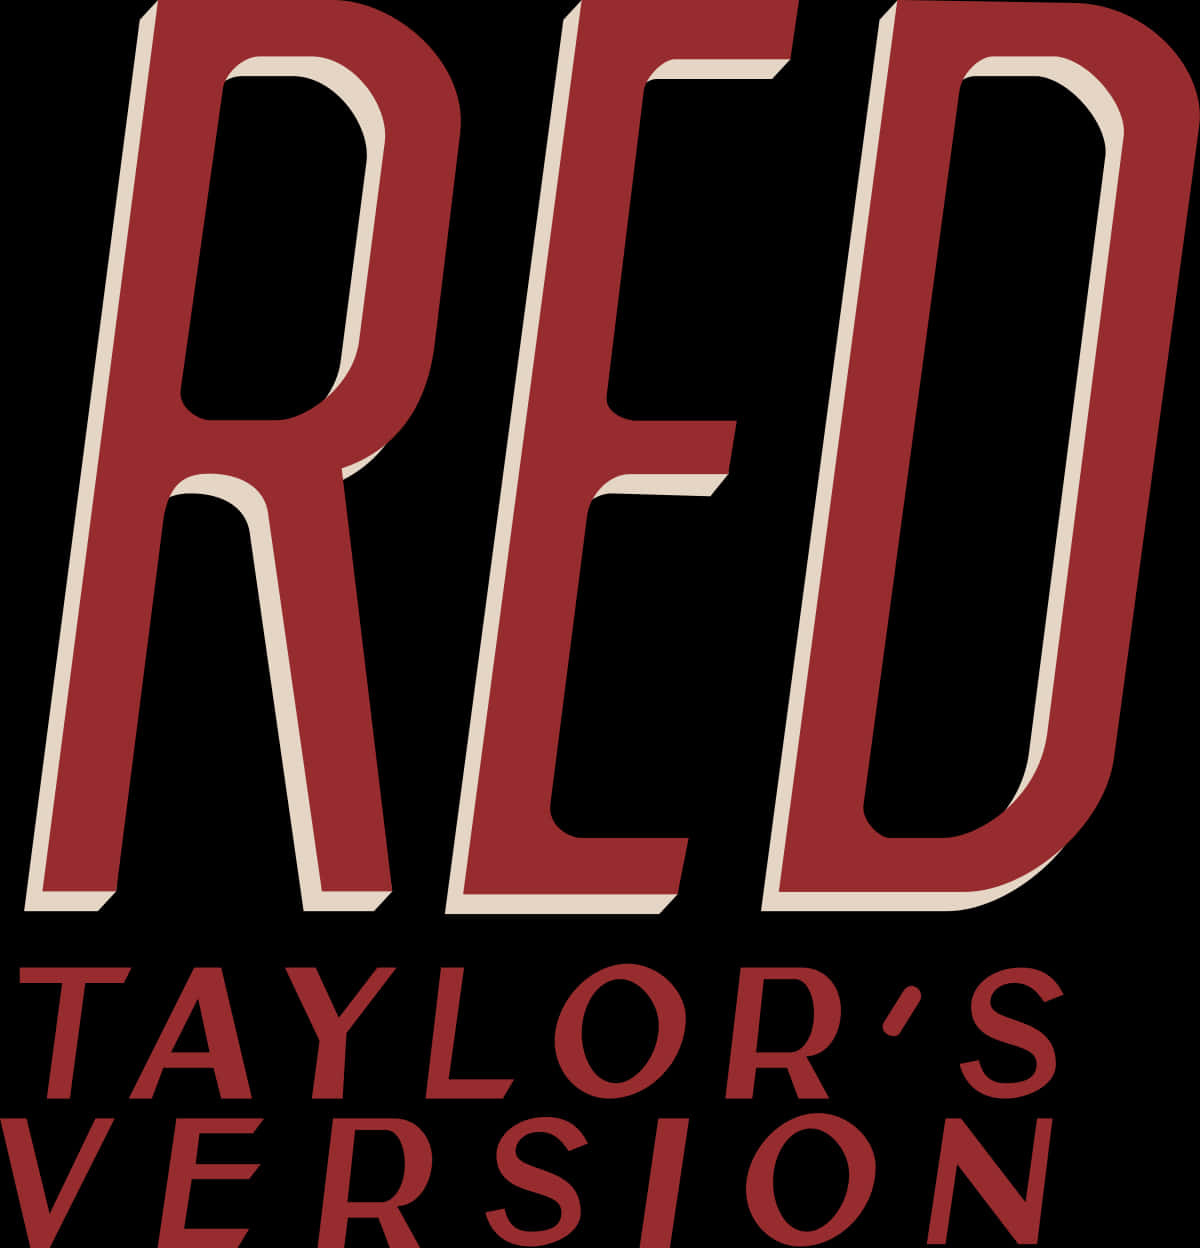 Alleaugen Auf Taylor Swift In Ihrer Großartigen Red Taylors Version. Wallpaper